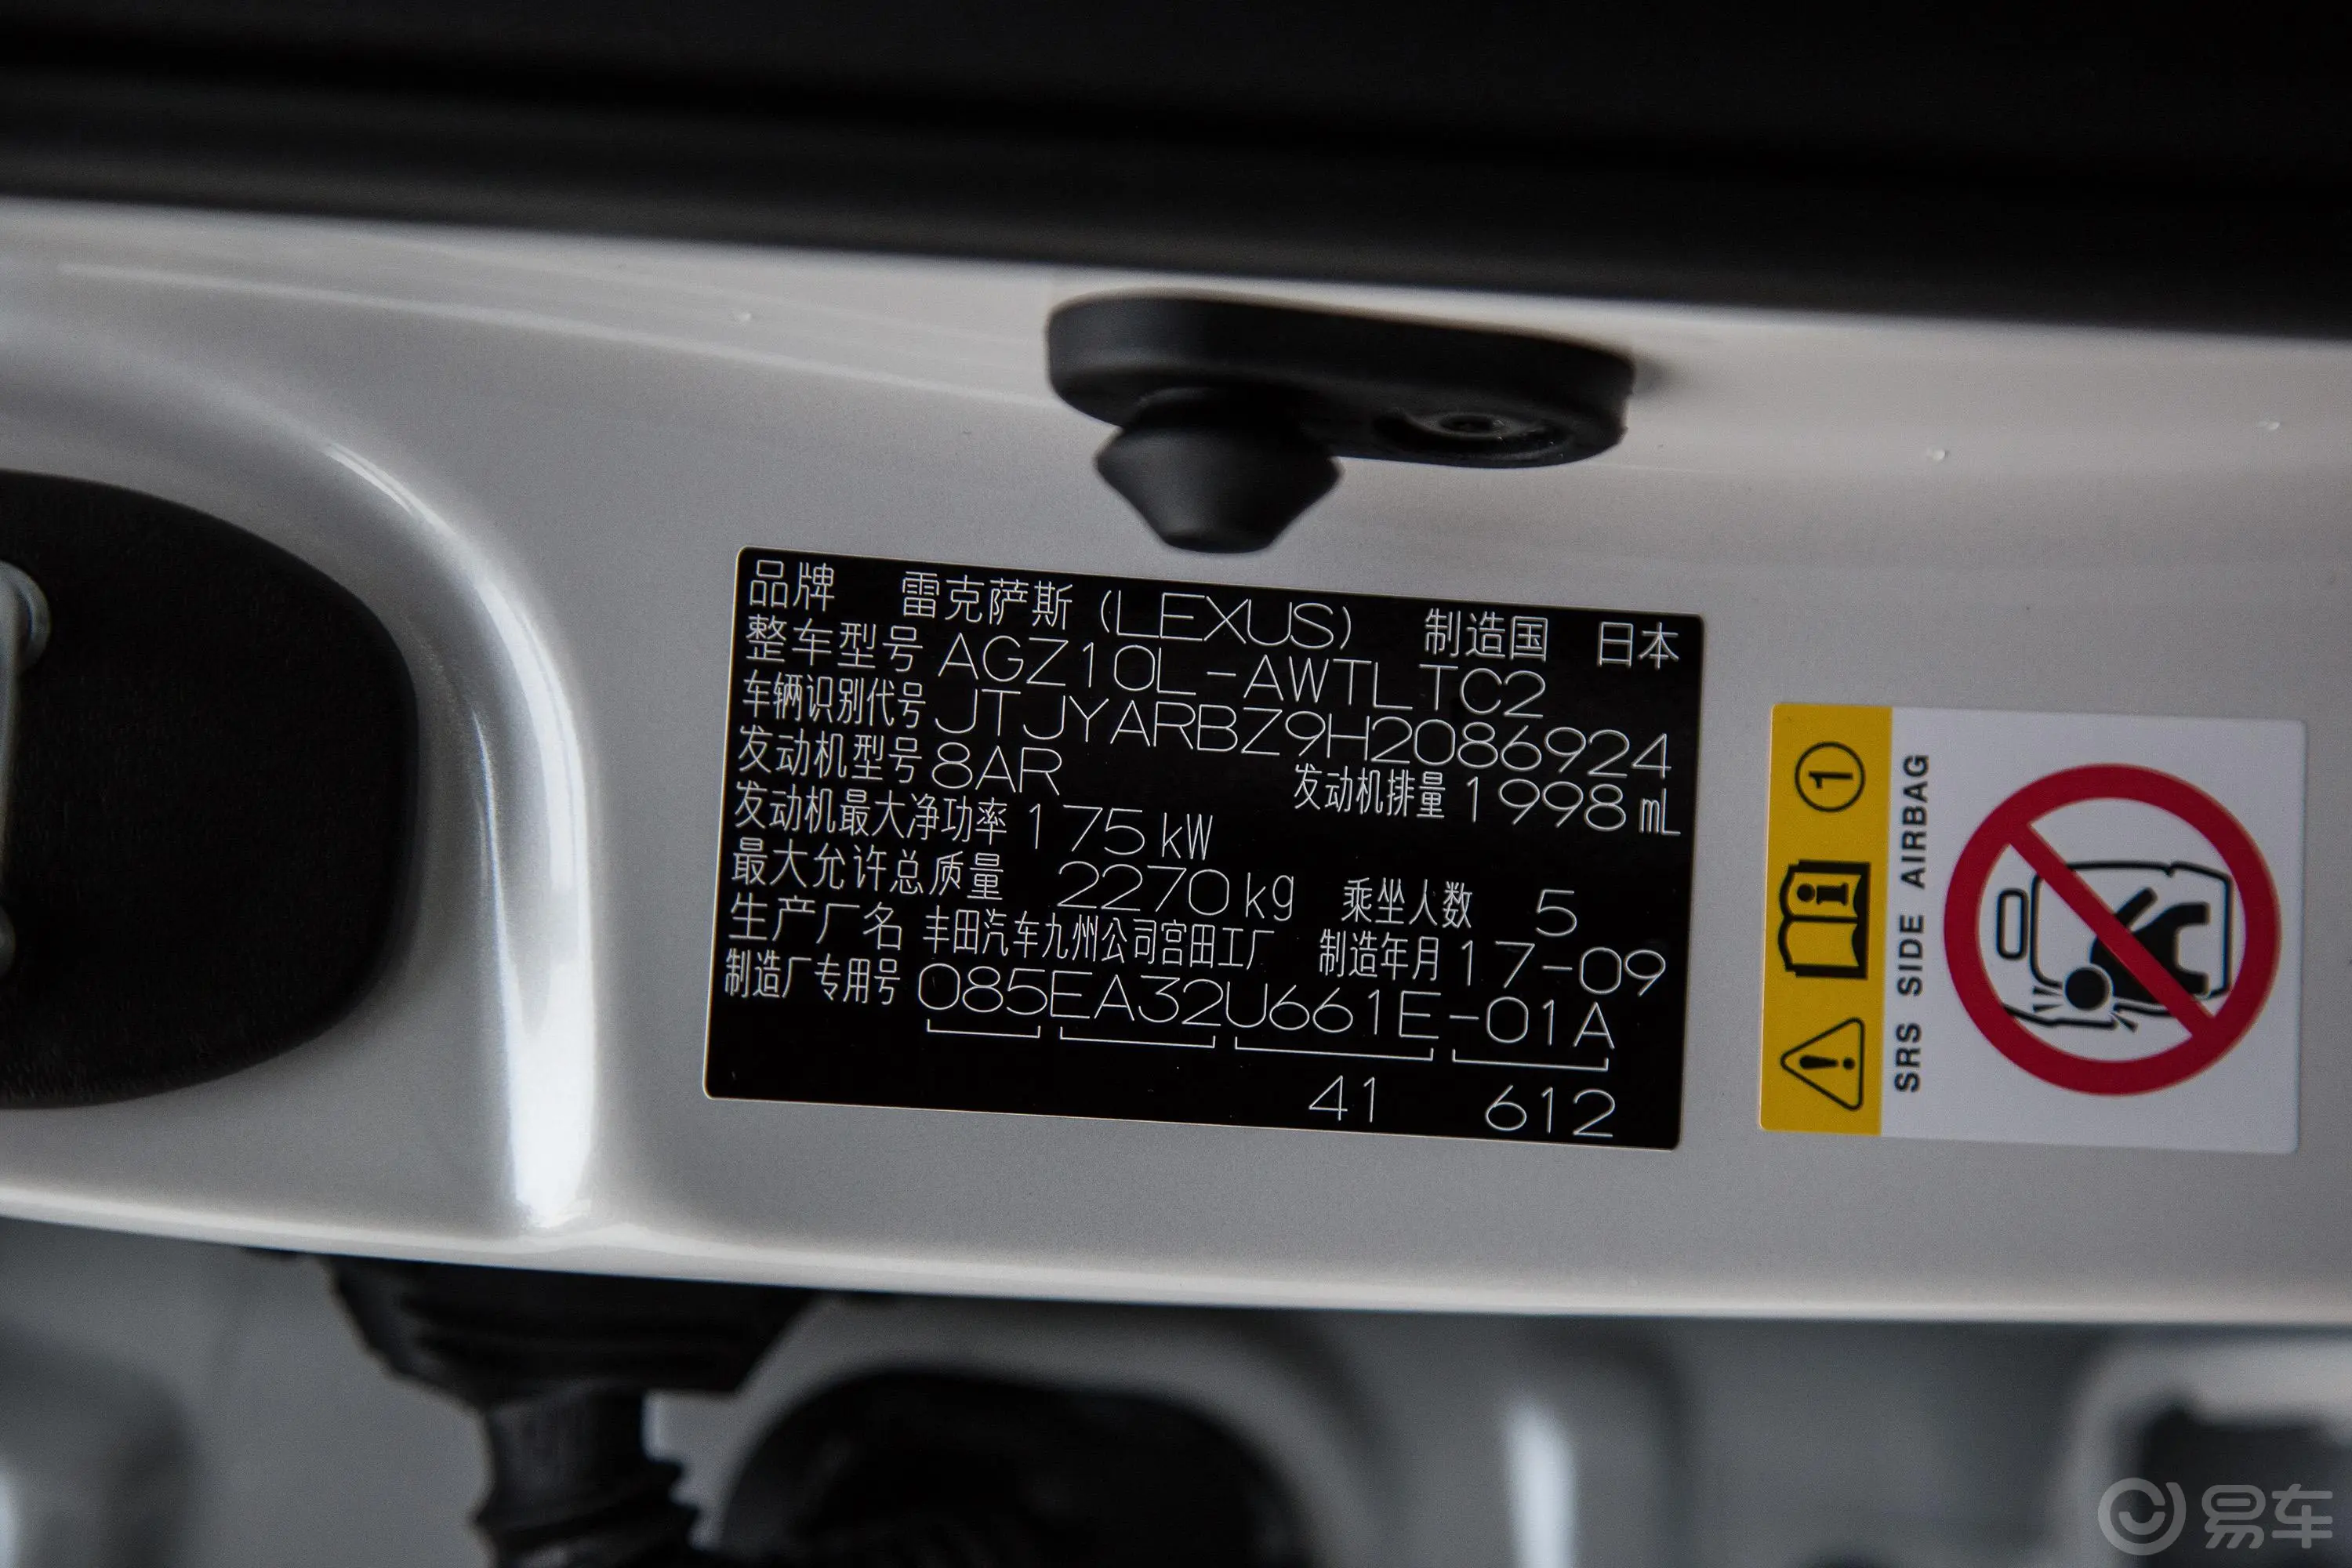 雷克萨斯NXNX 300 锋行版车辆信息铭牌